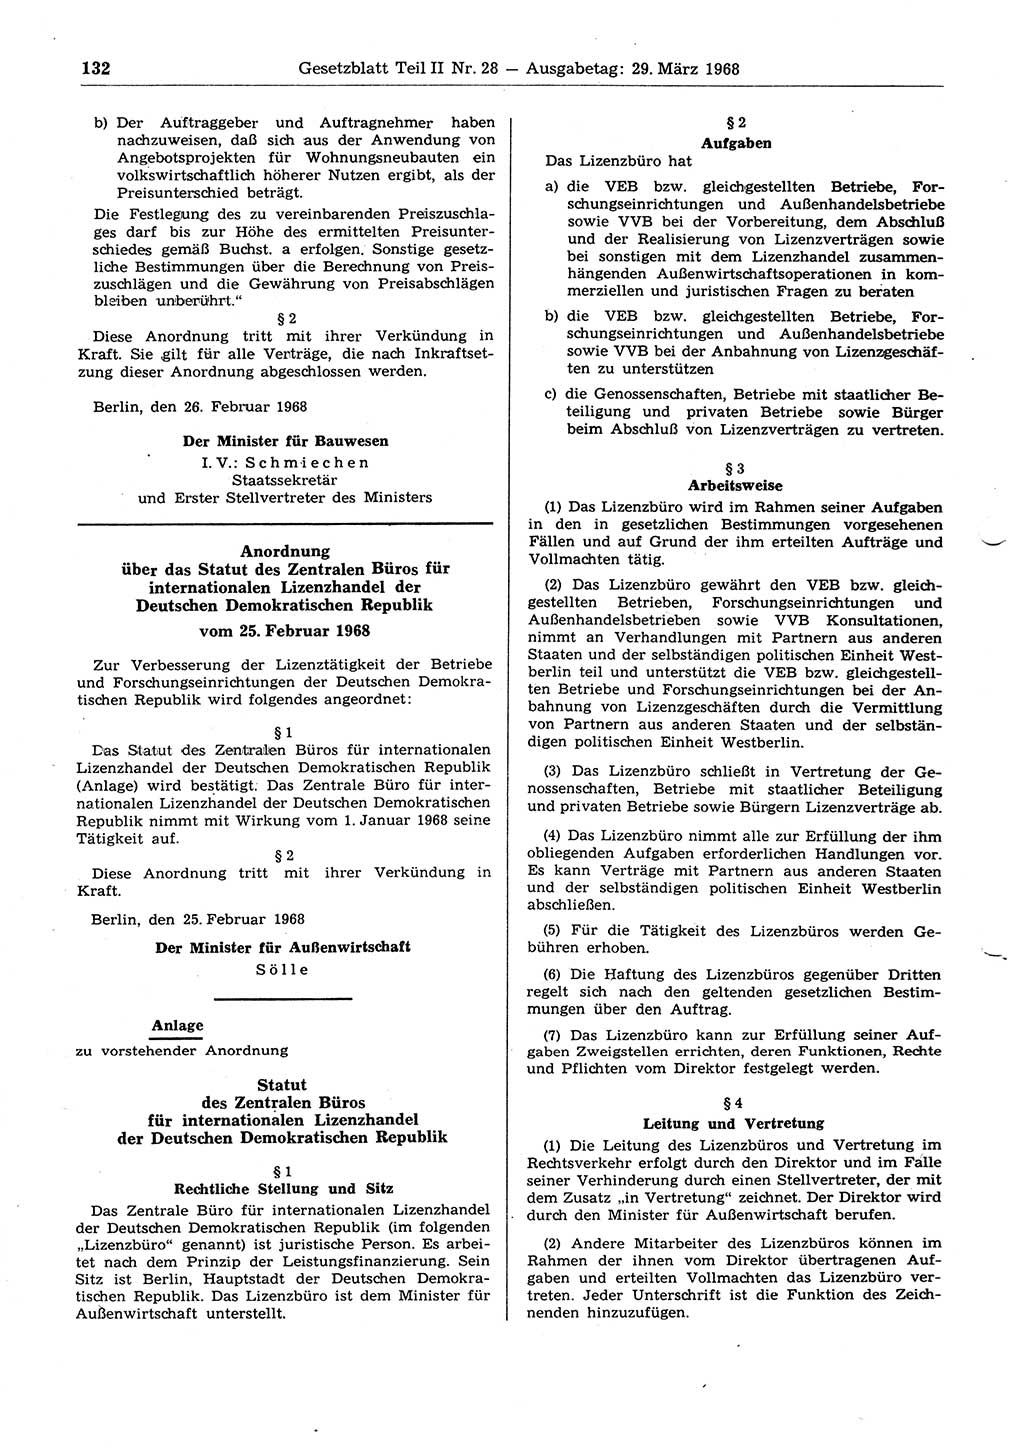 Gesetzblatt (GBl.) der Deutschen Demokratischen Republik (DDR) Teil ⅠⅠ 1968, Seite 132 (GBl. DDR ⅠⅠ 1968, S. 132)